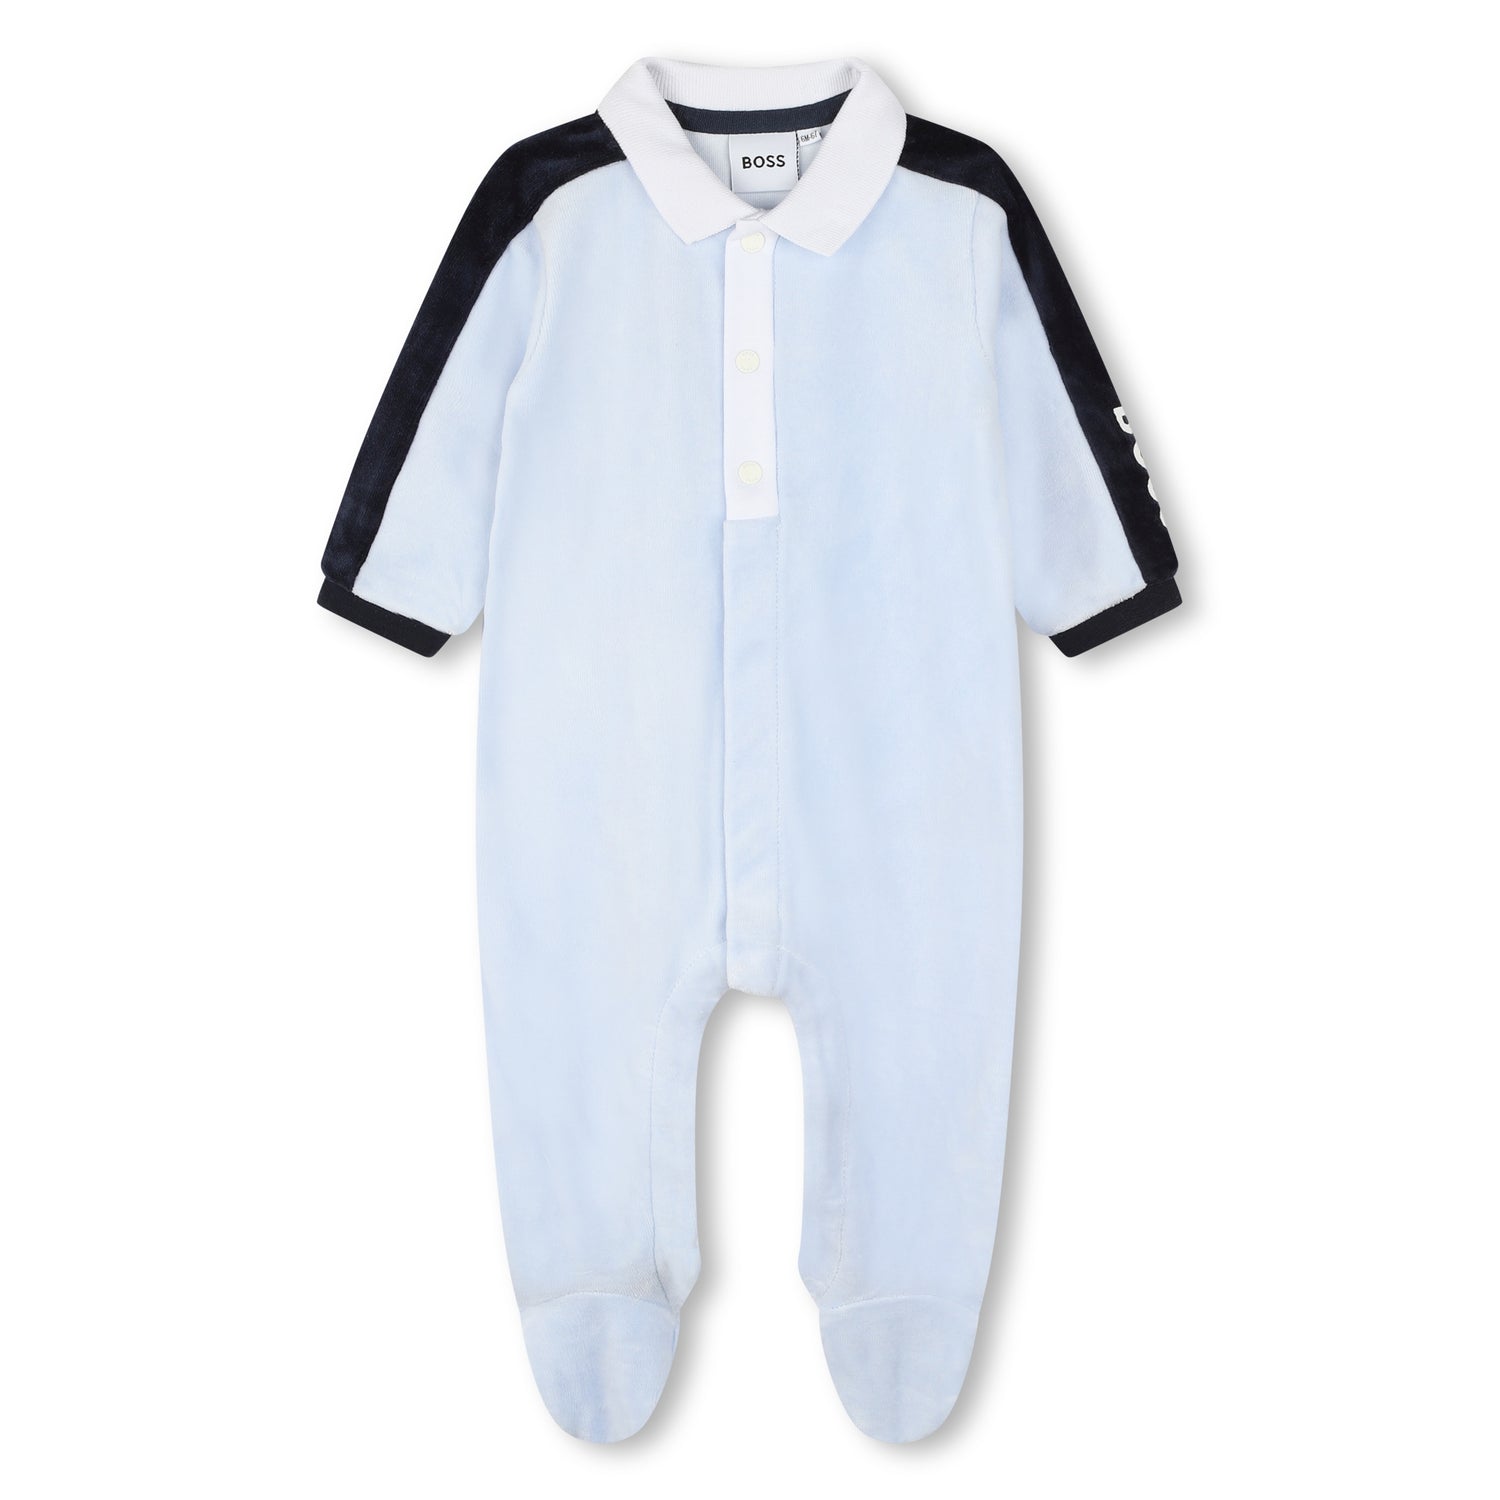 Hugo Boss Pyjamas Style: J97209